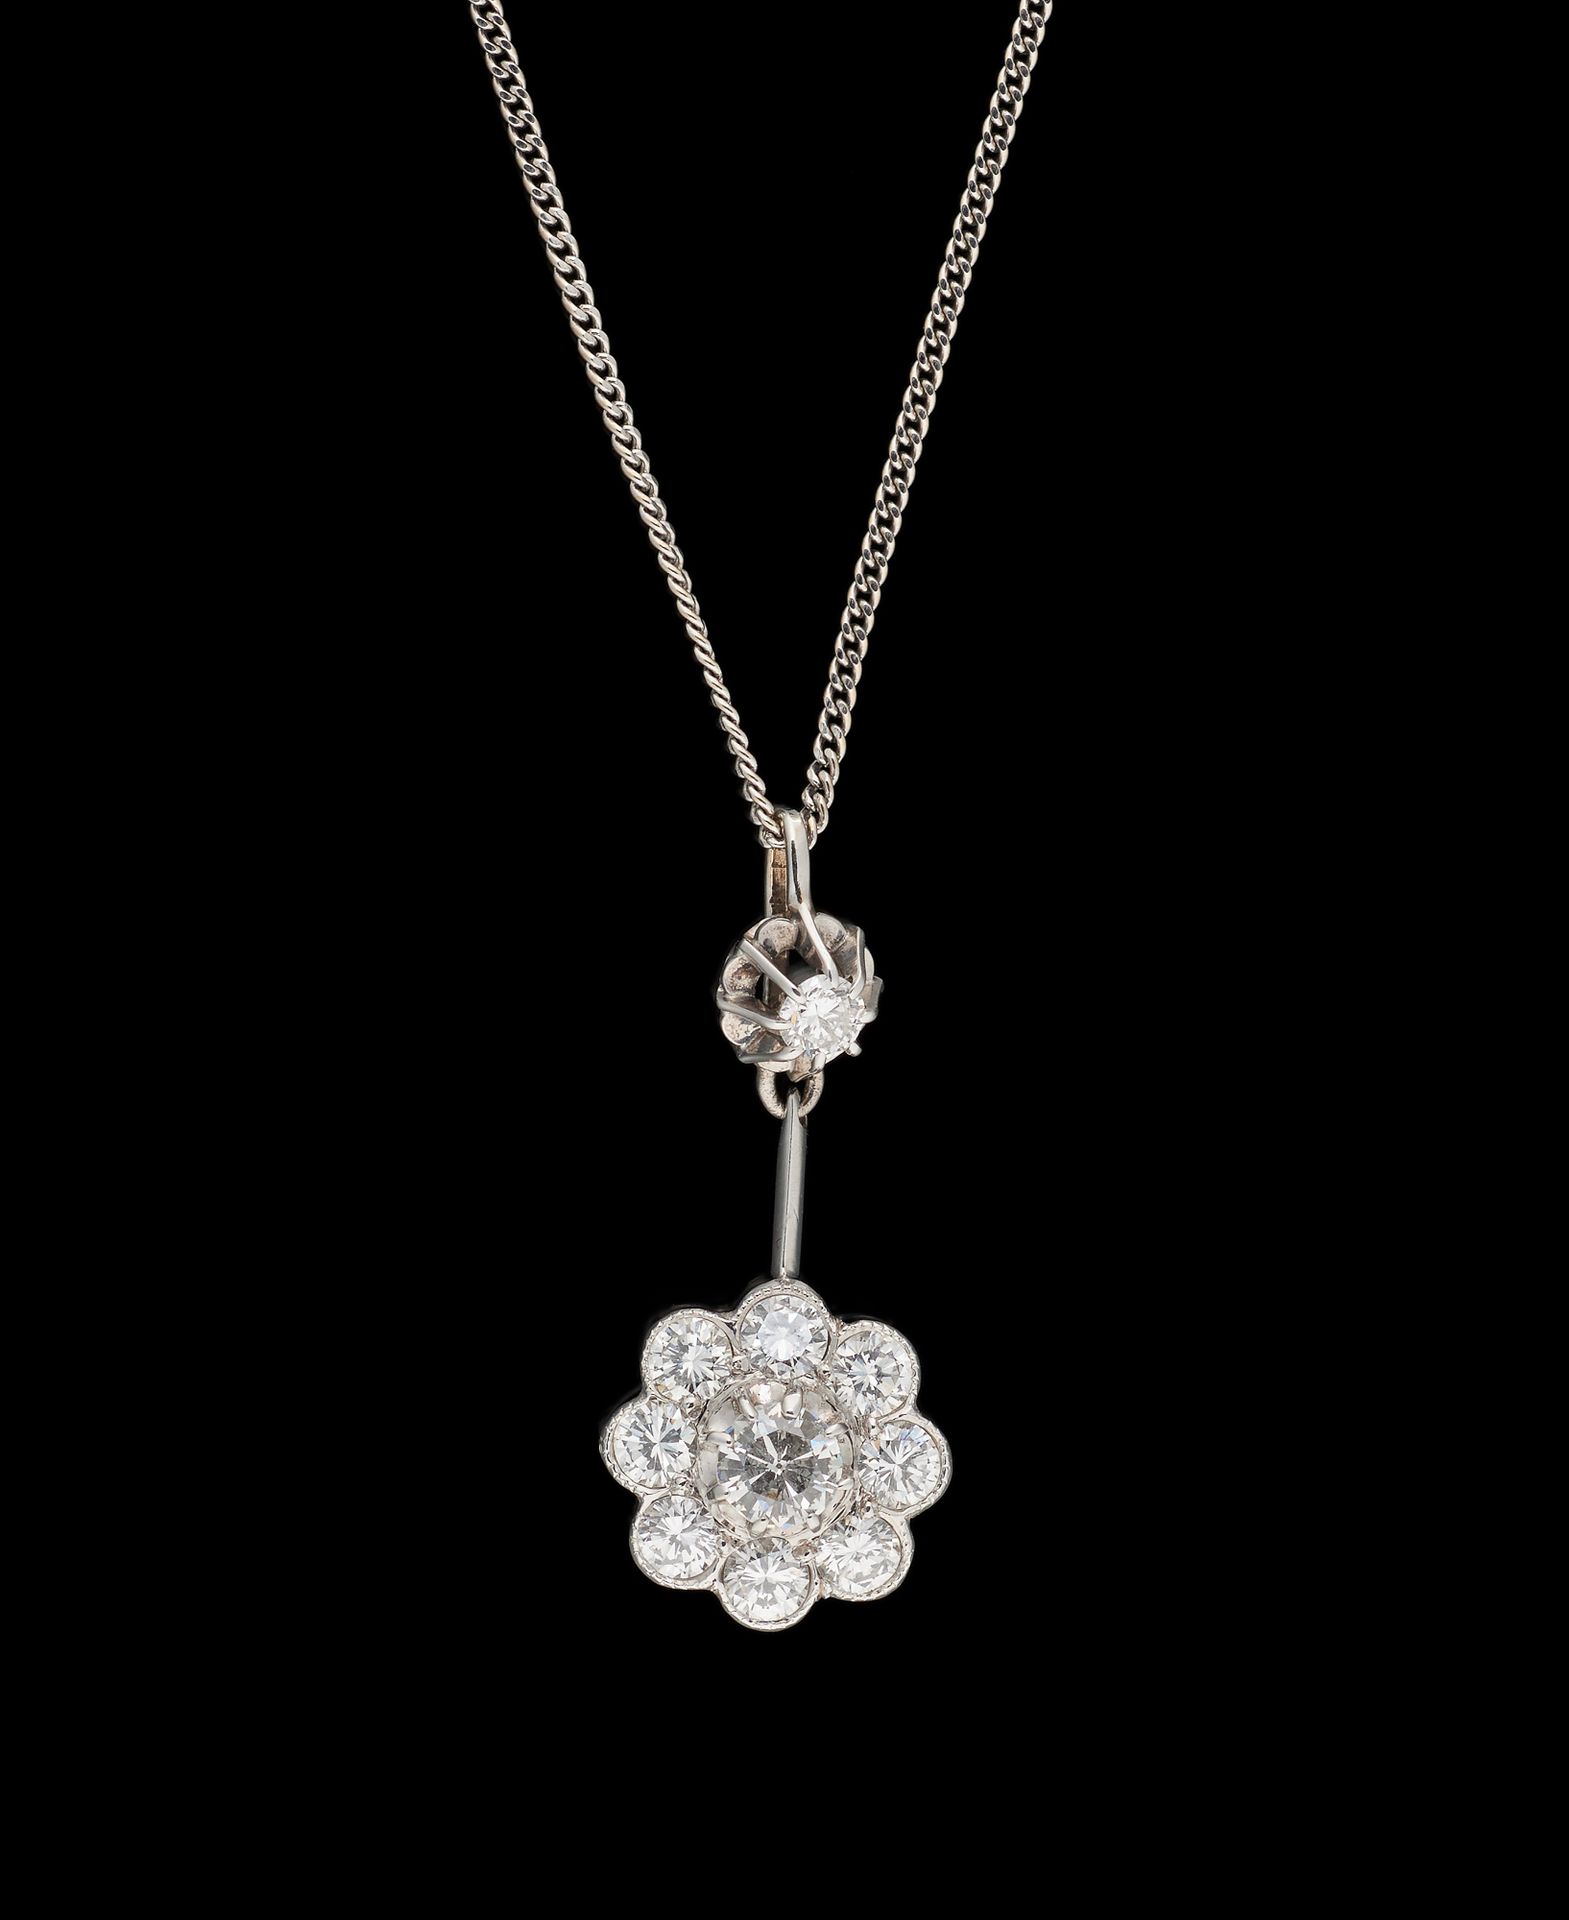 Joaillerie. 珠宝：铂金和白金吊坠，镶有+/- 1.20克拉的钻石，由一条白金链固定。

尺寸：高：2.5厘米。